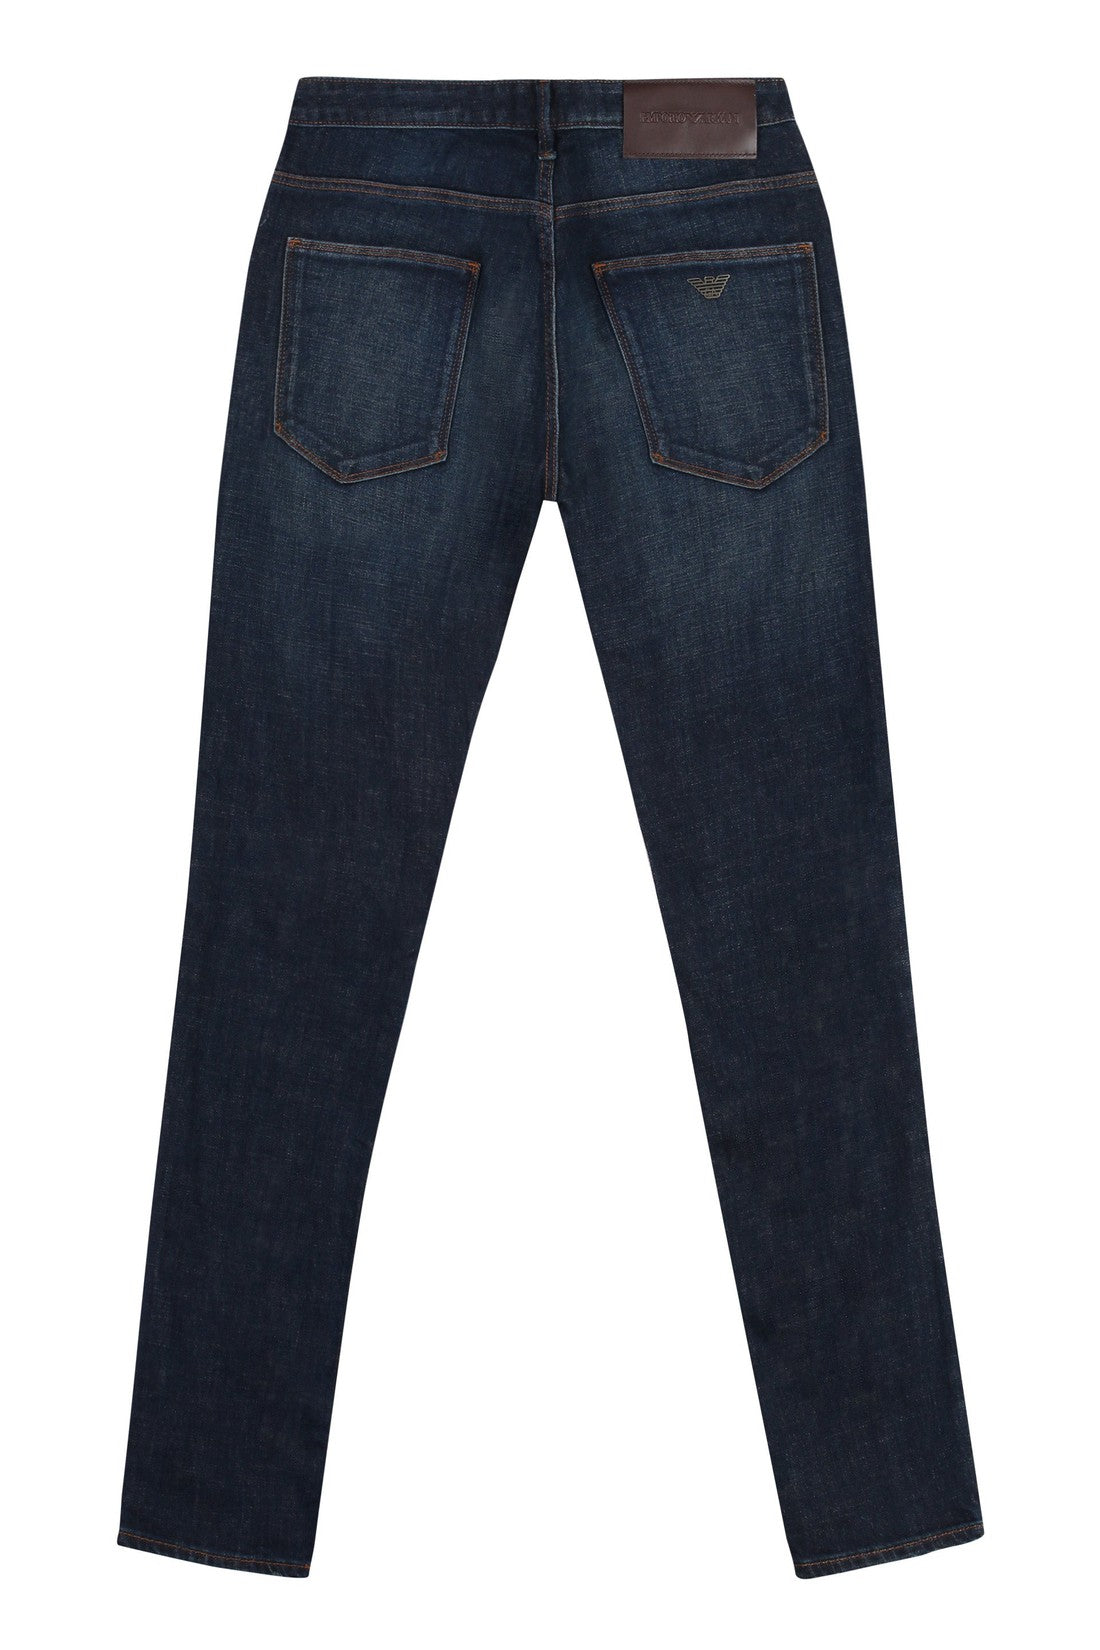 Emporio Armani-OUTLET-SALE-slim fit jeans-ARCHIVIST